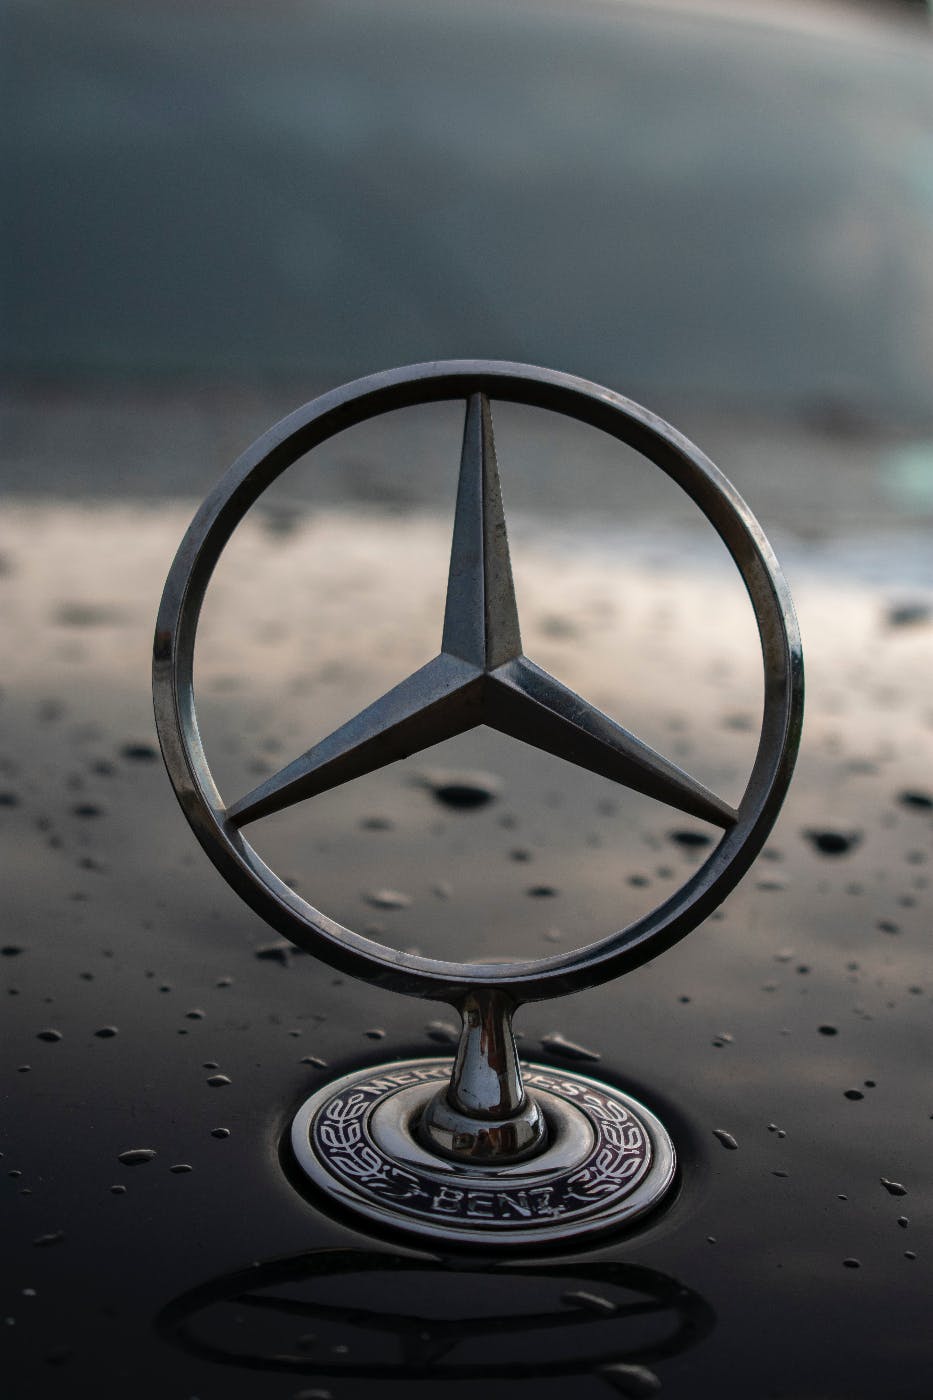 A Mercedes Benz hood ornament